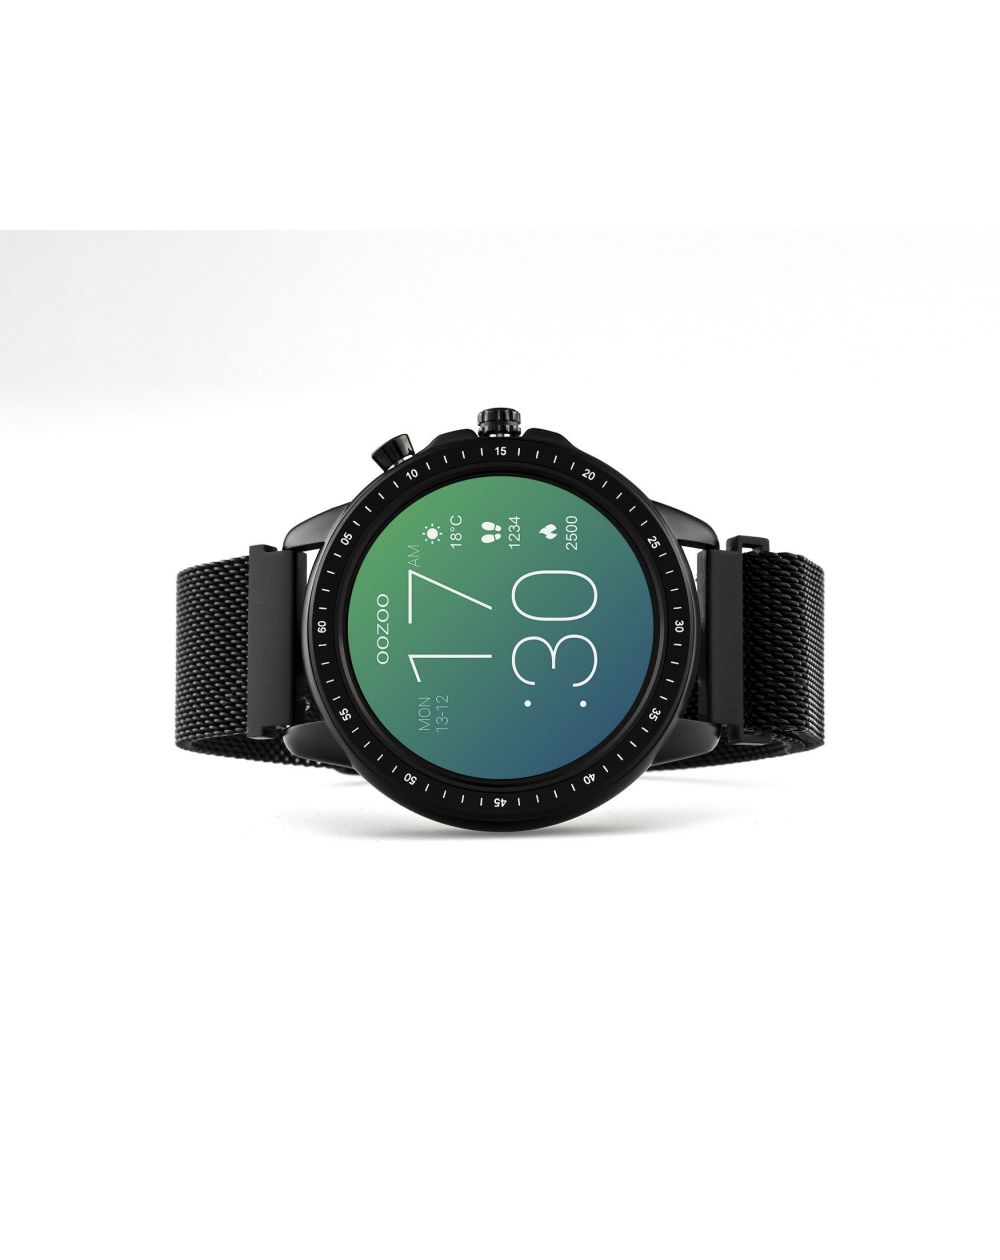 Montre Oozoo Q00309 - Smartwatch - Marque OOZOO - Livraison gratuite